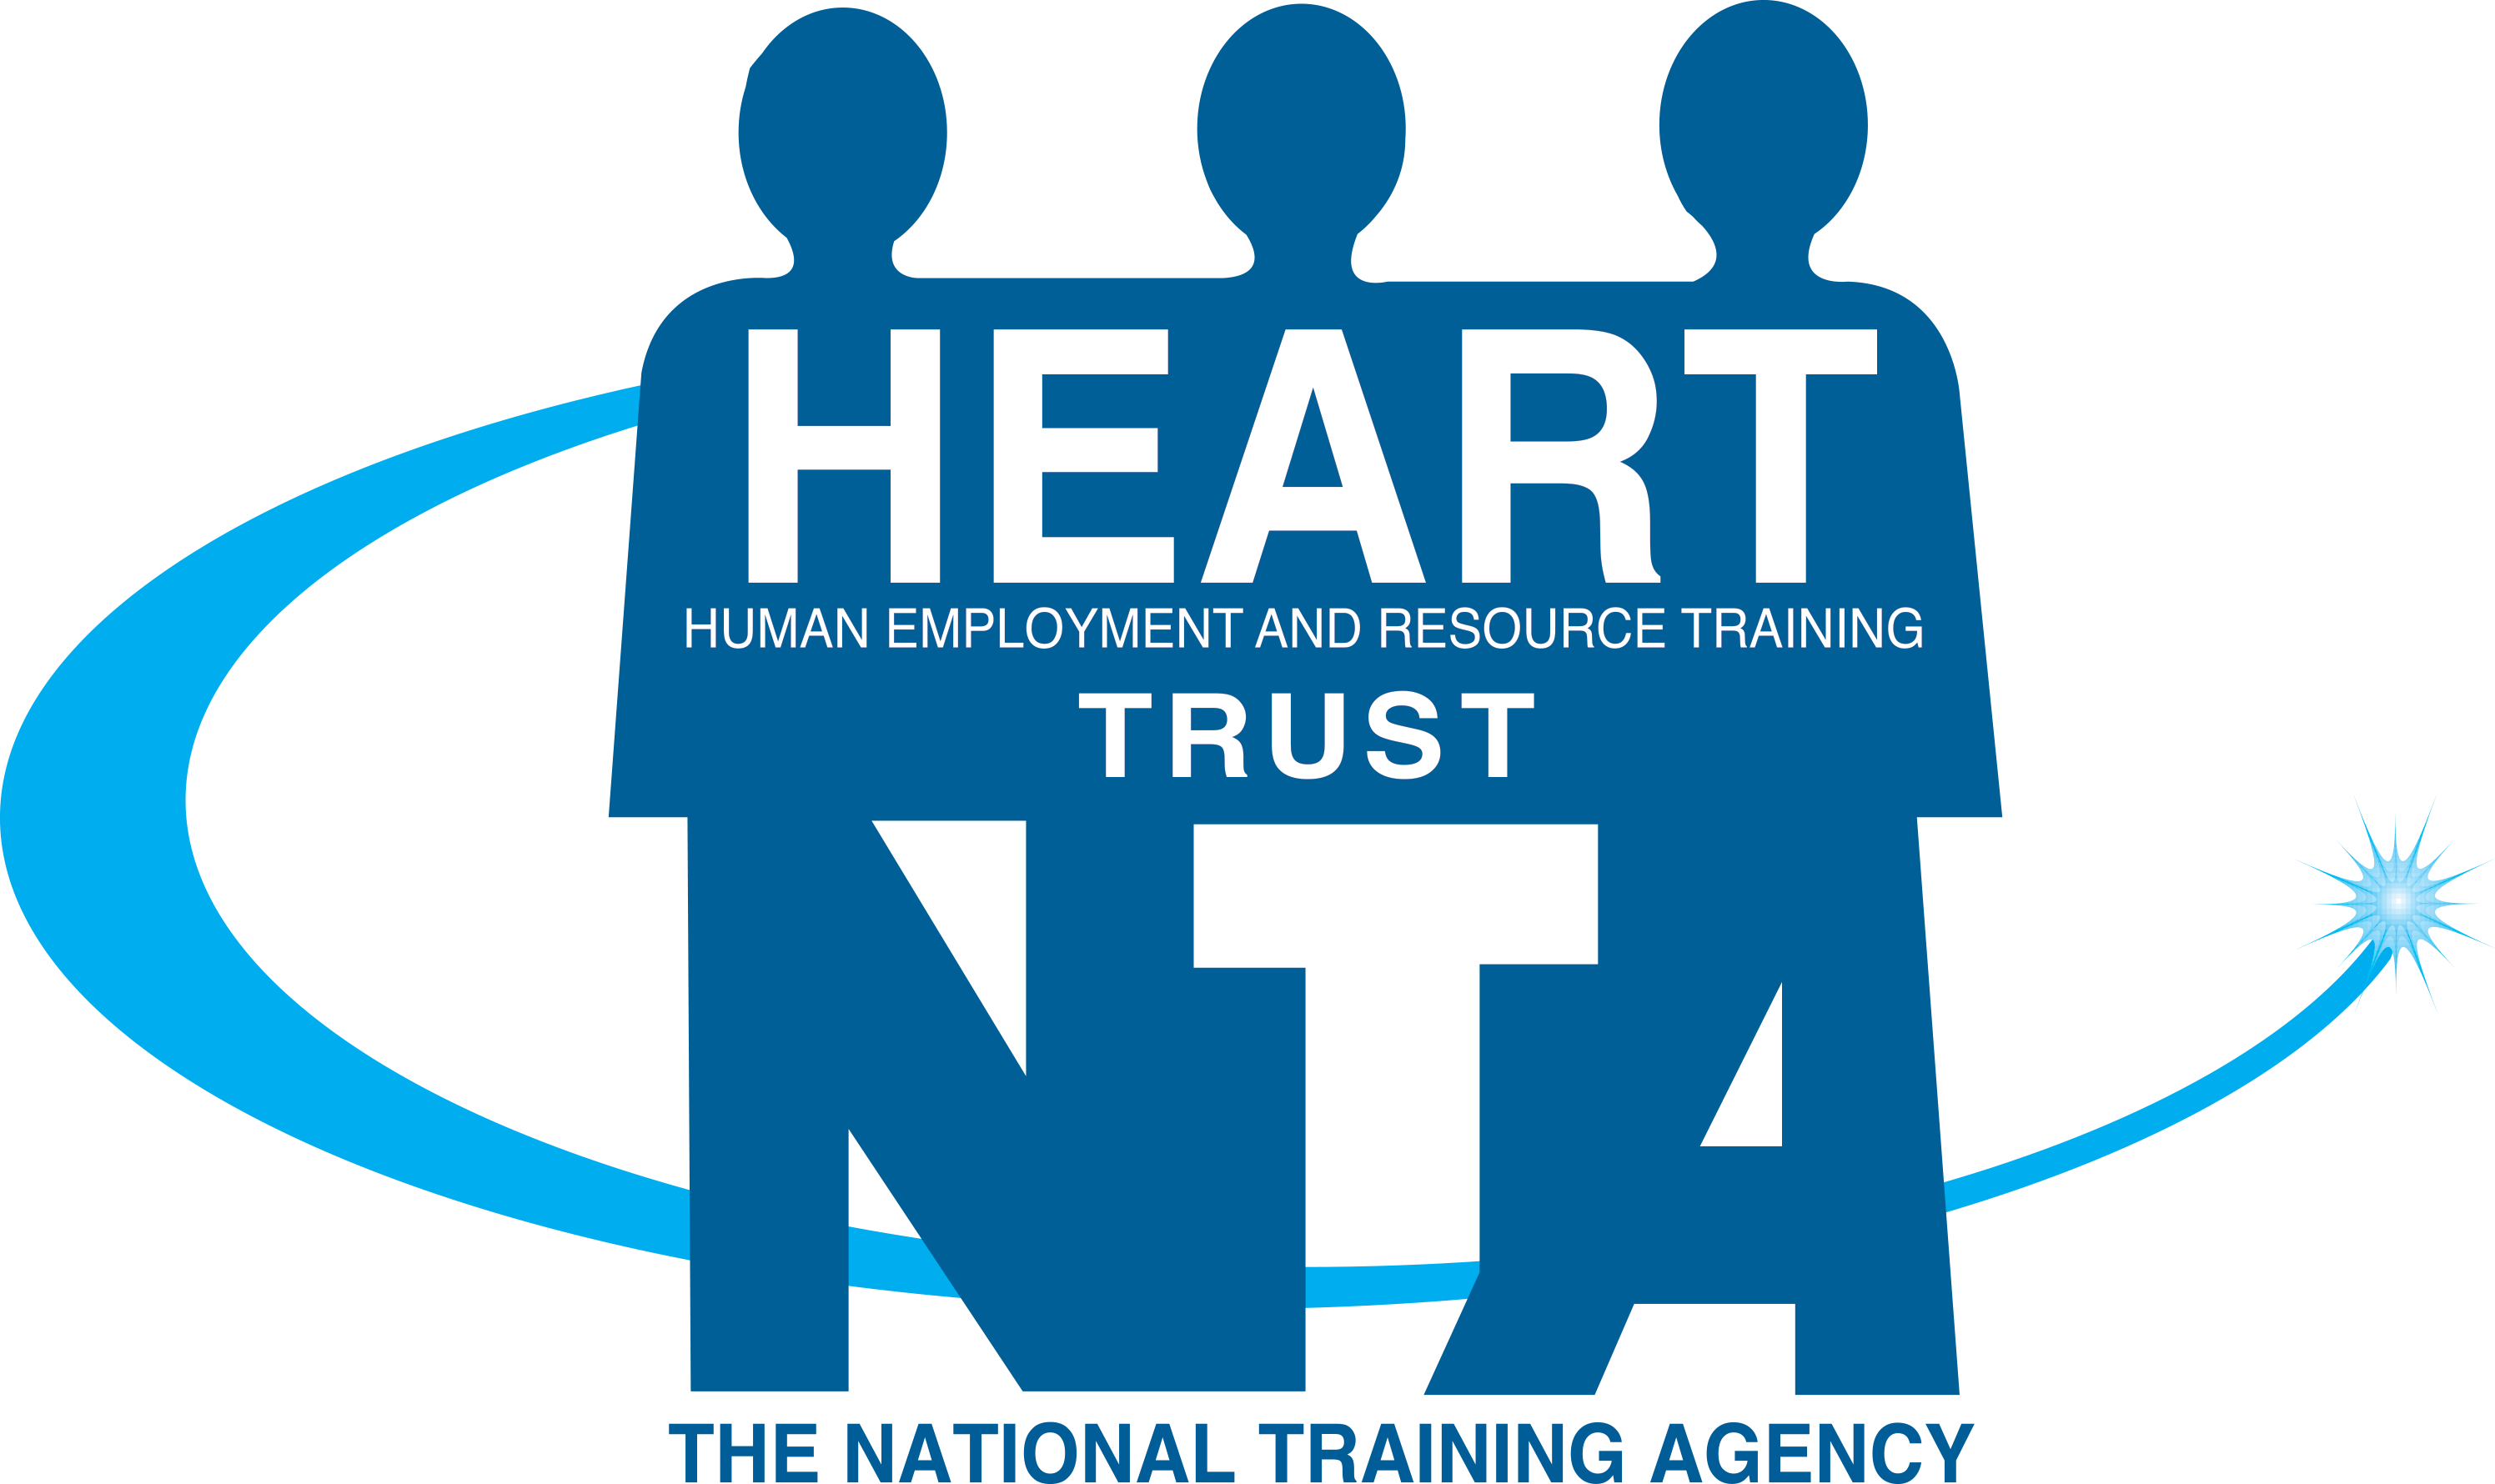 HEART/NSTA Trust